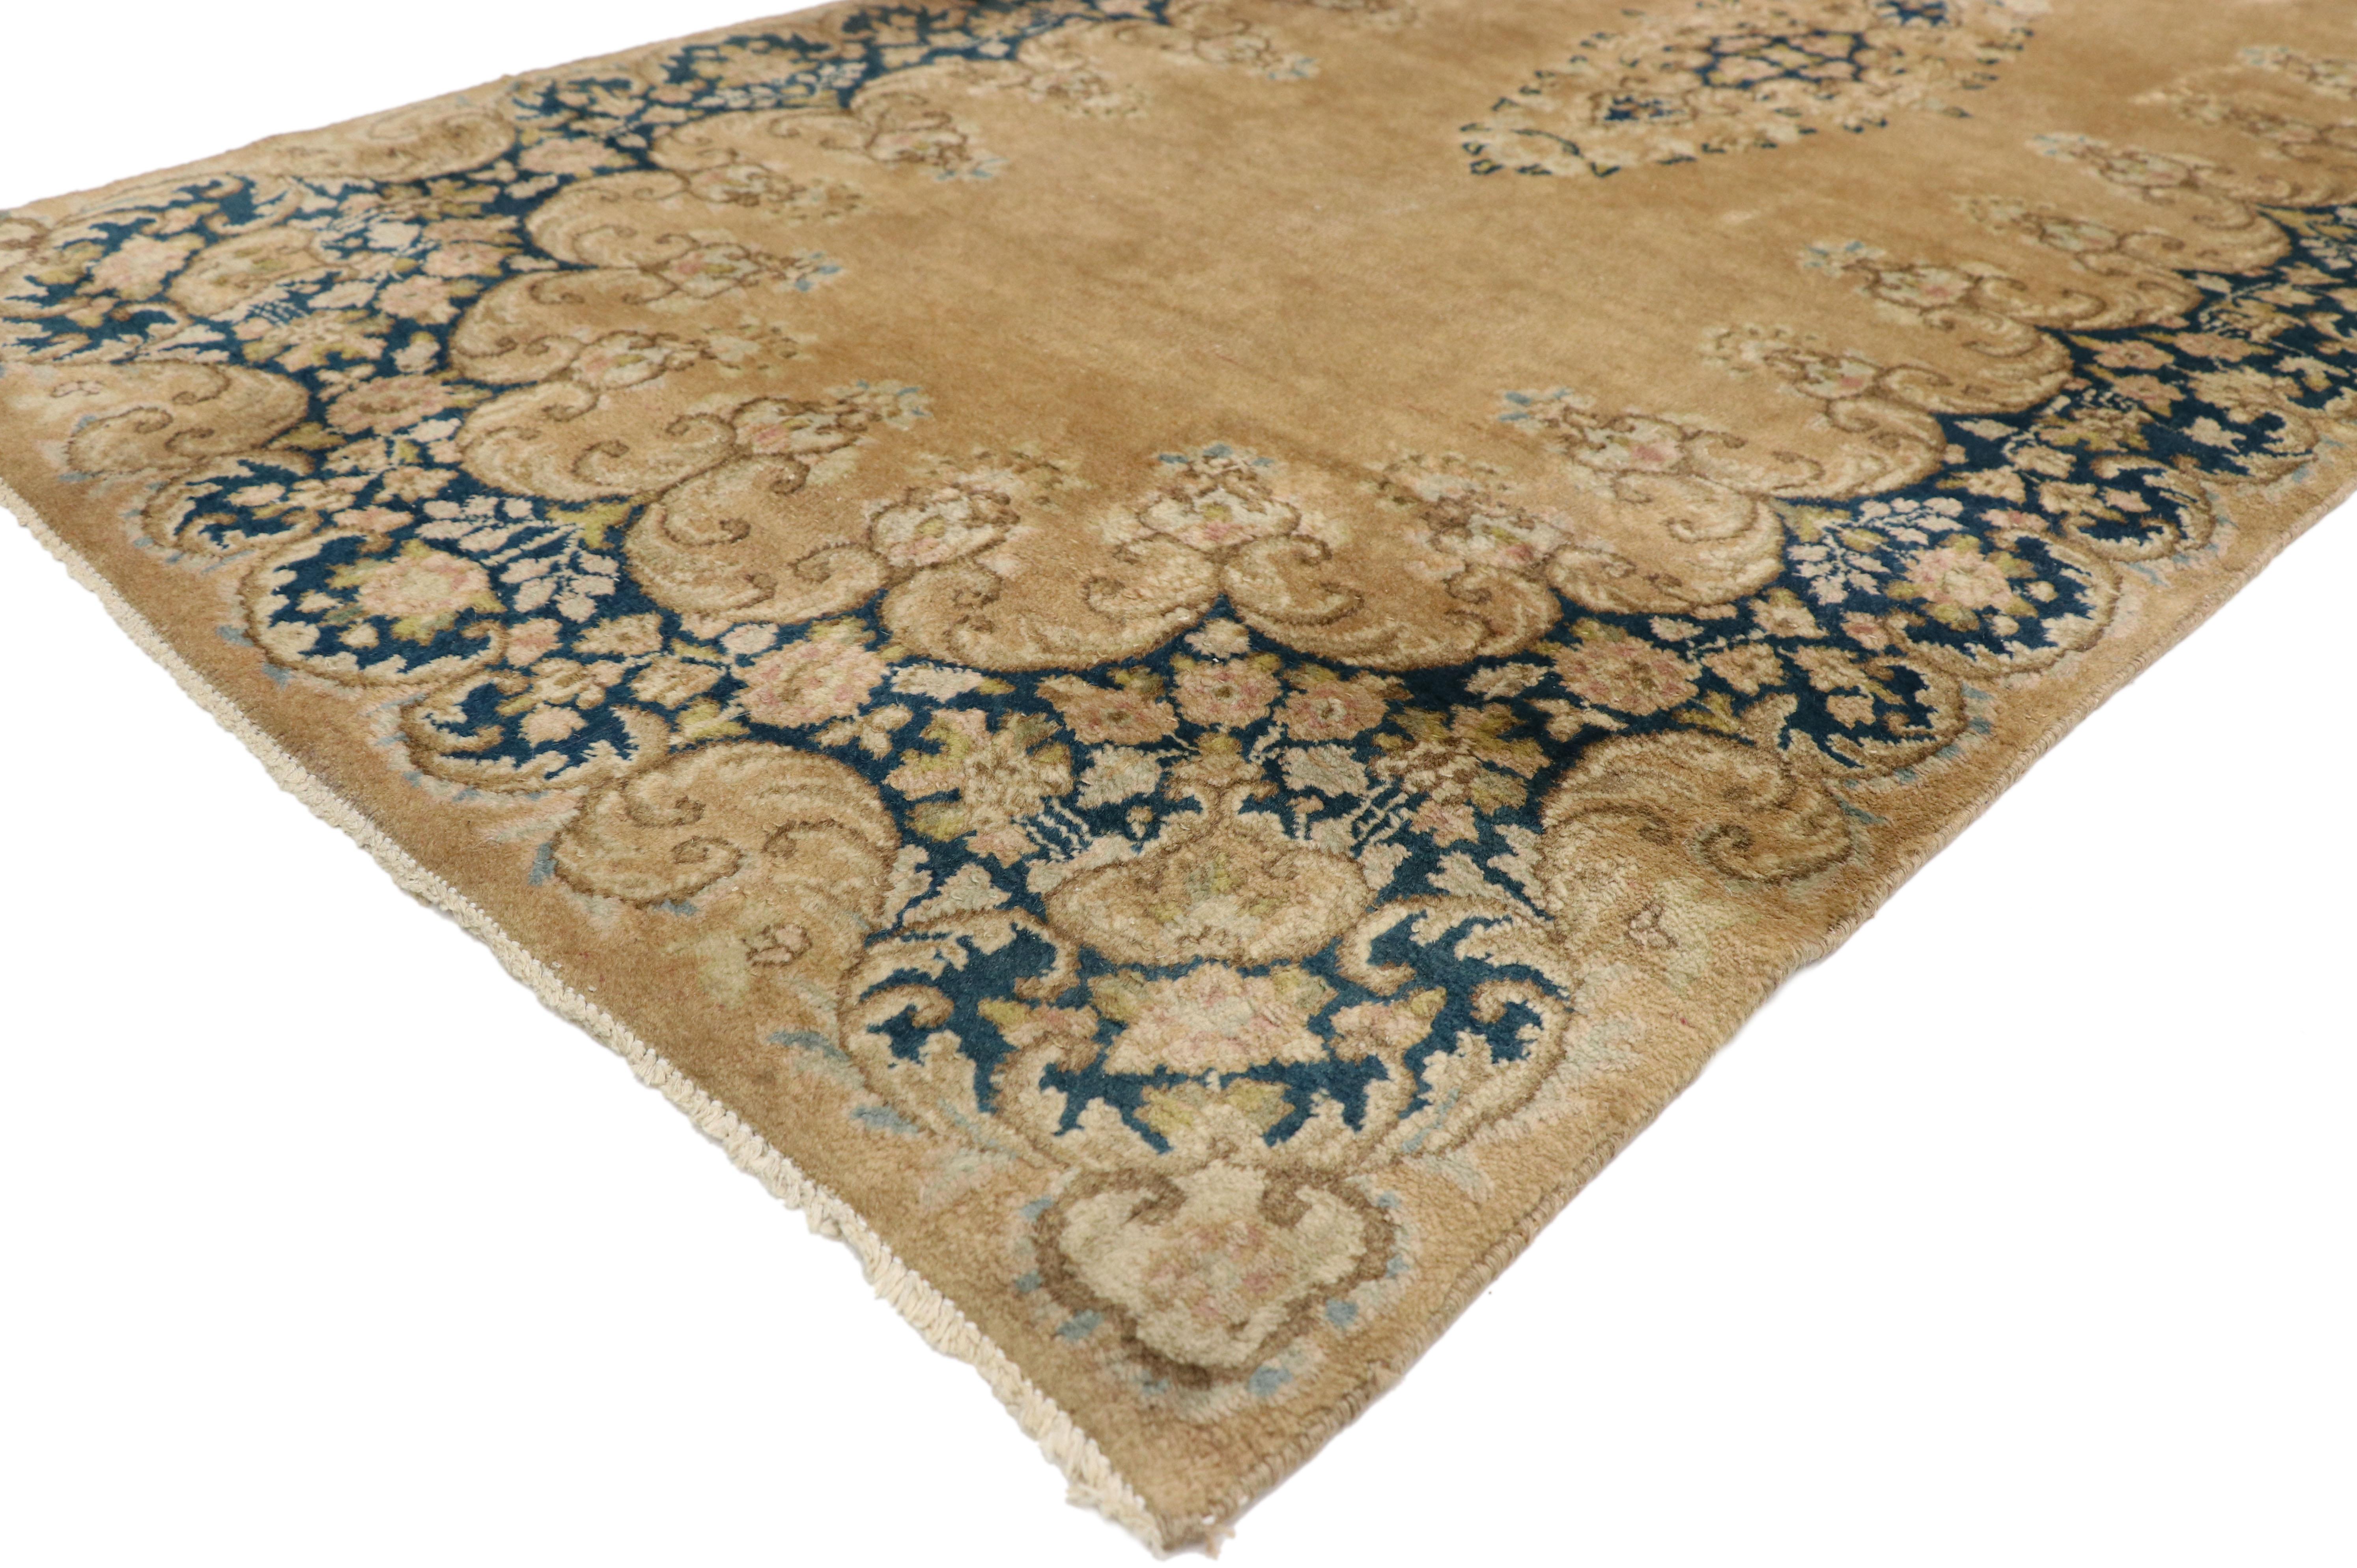 73660 Antiker persischer Kerman Teppich Läufer, 03'03 x 17'06. 
Dieser alte persische Kerman Flurläufer, der sorgfältig aus handgeknüpfter Wolle gefertigt wurde, besticht durch ein tintenblaues Blumenmedaillon in der Mitte, das durch zarte